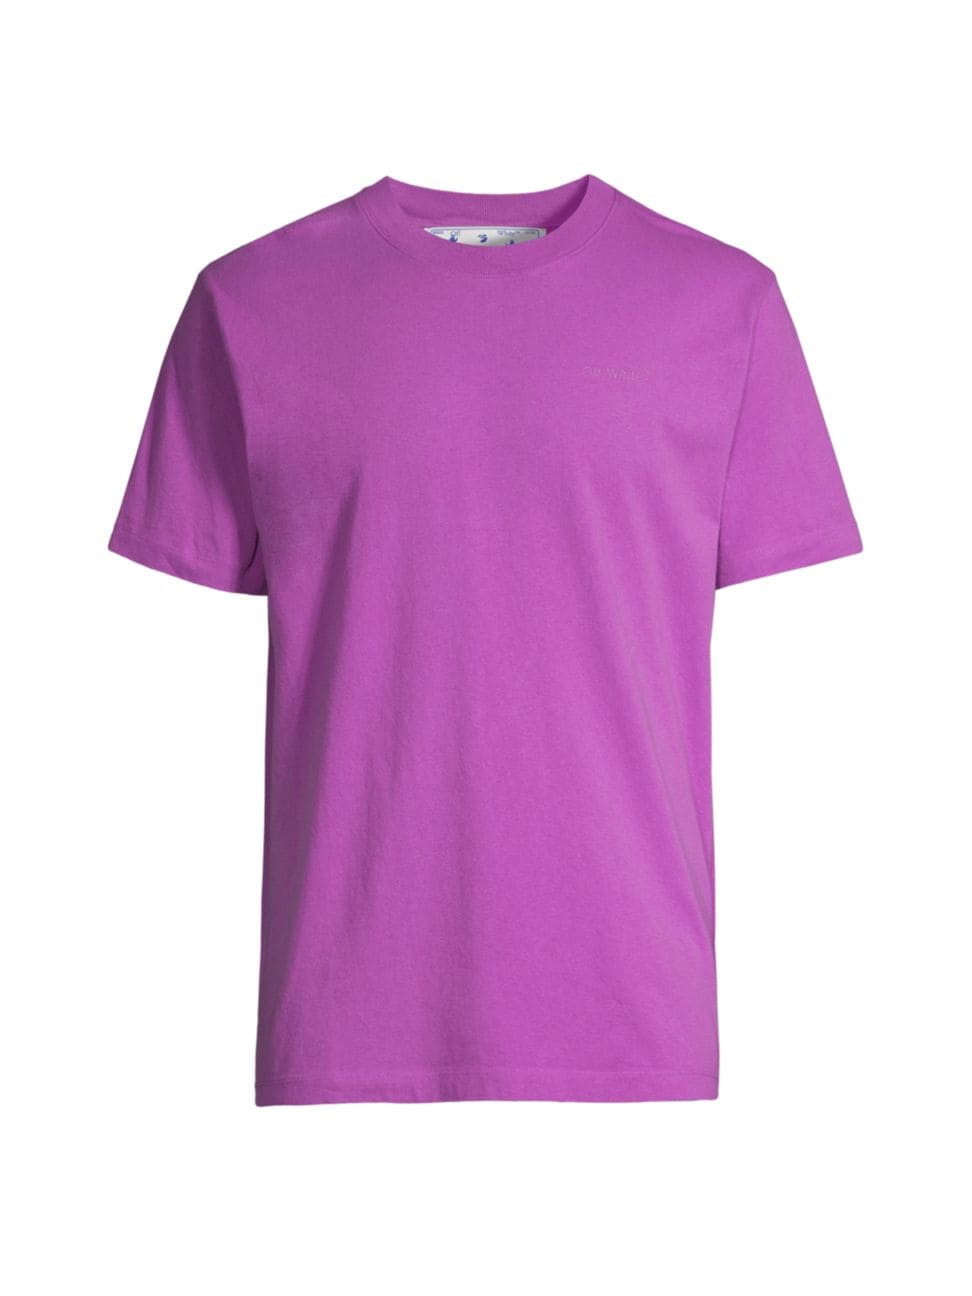 OFF-WHITE Diagonal Tab T-Shirt 'Purple'